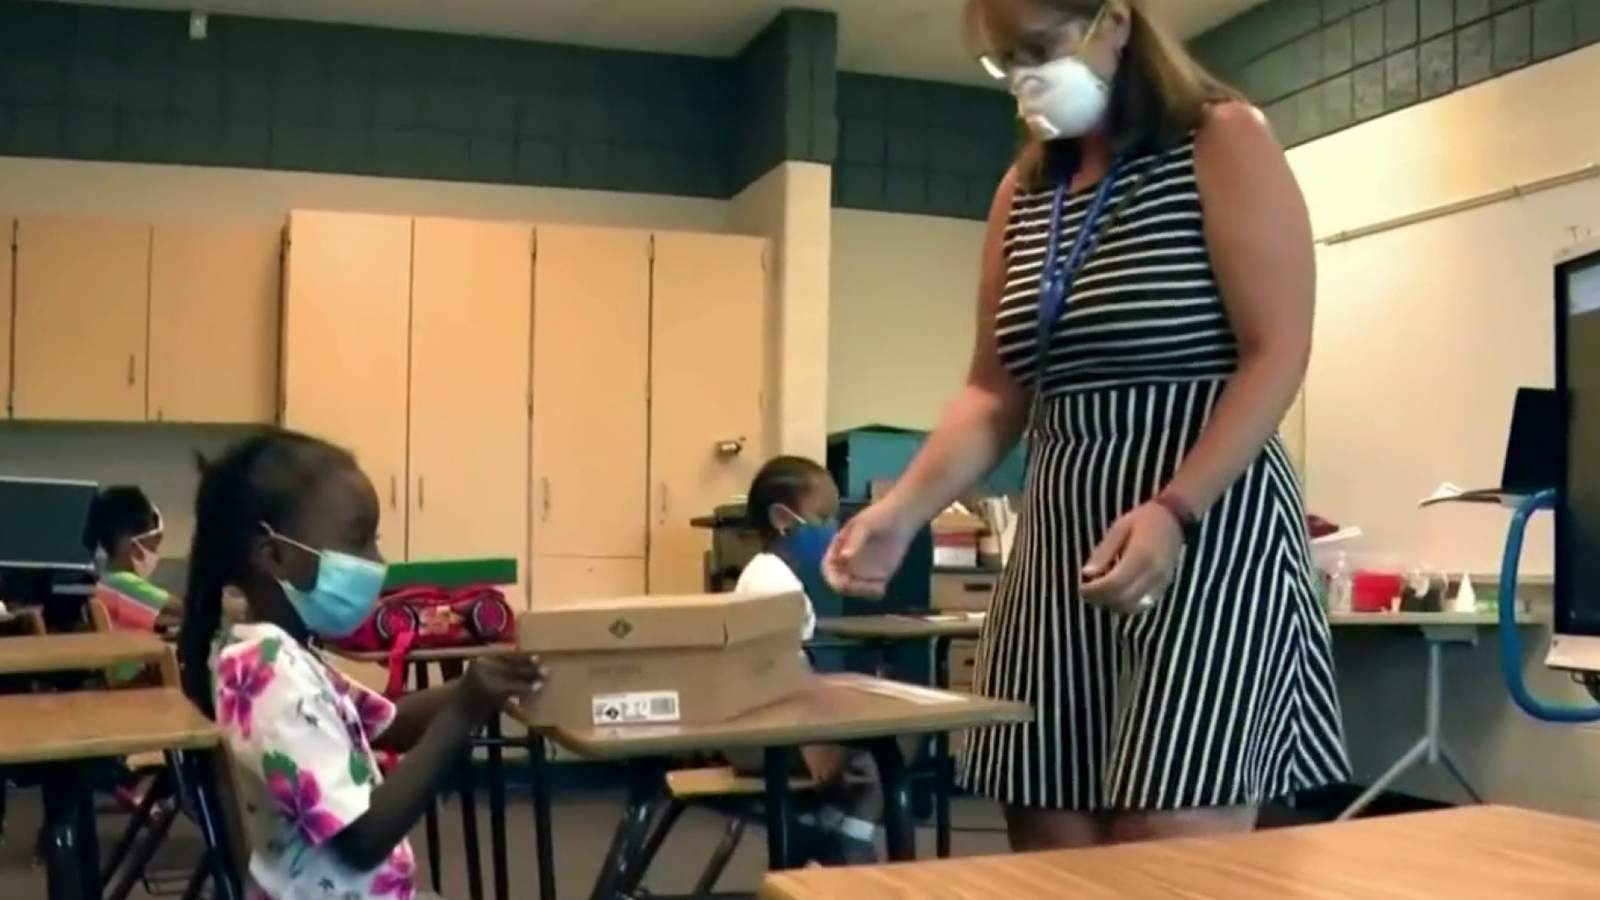 Commerce Township business donates 60,000 reusable masks to Detroit schools